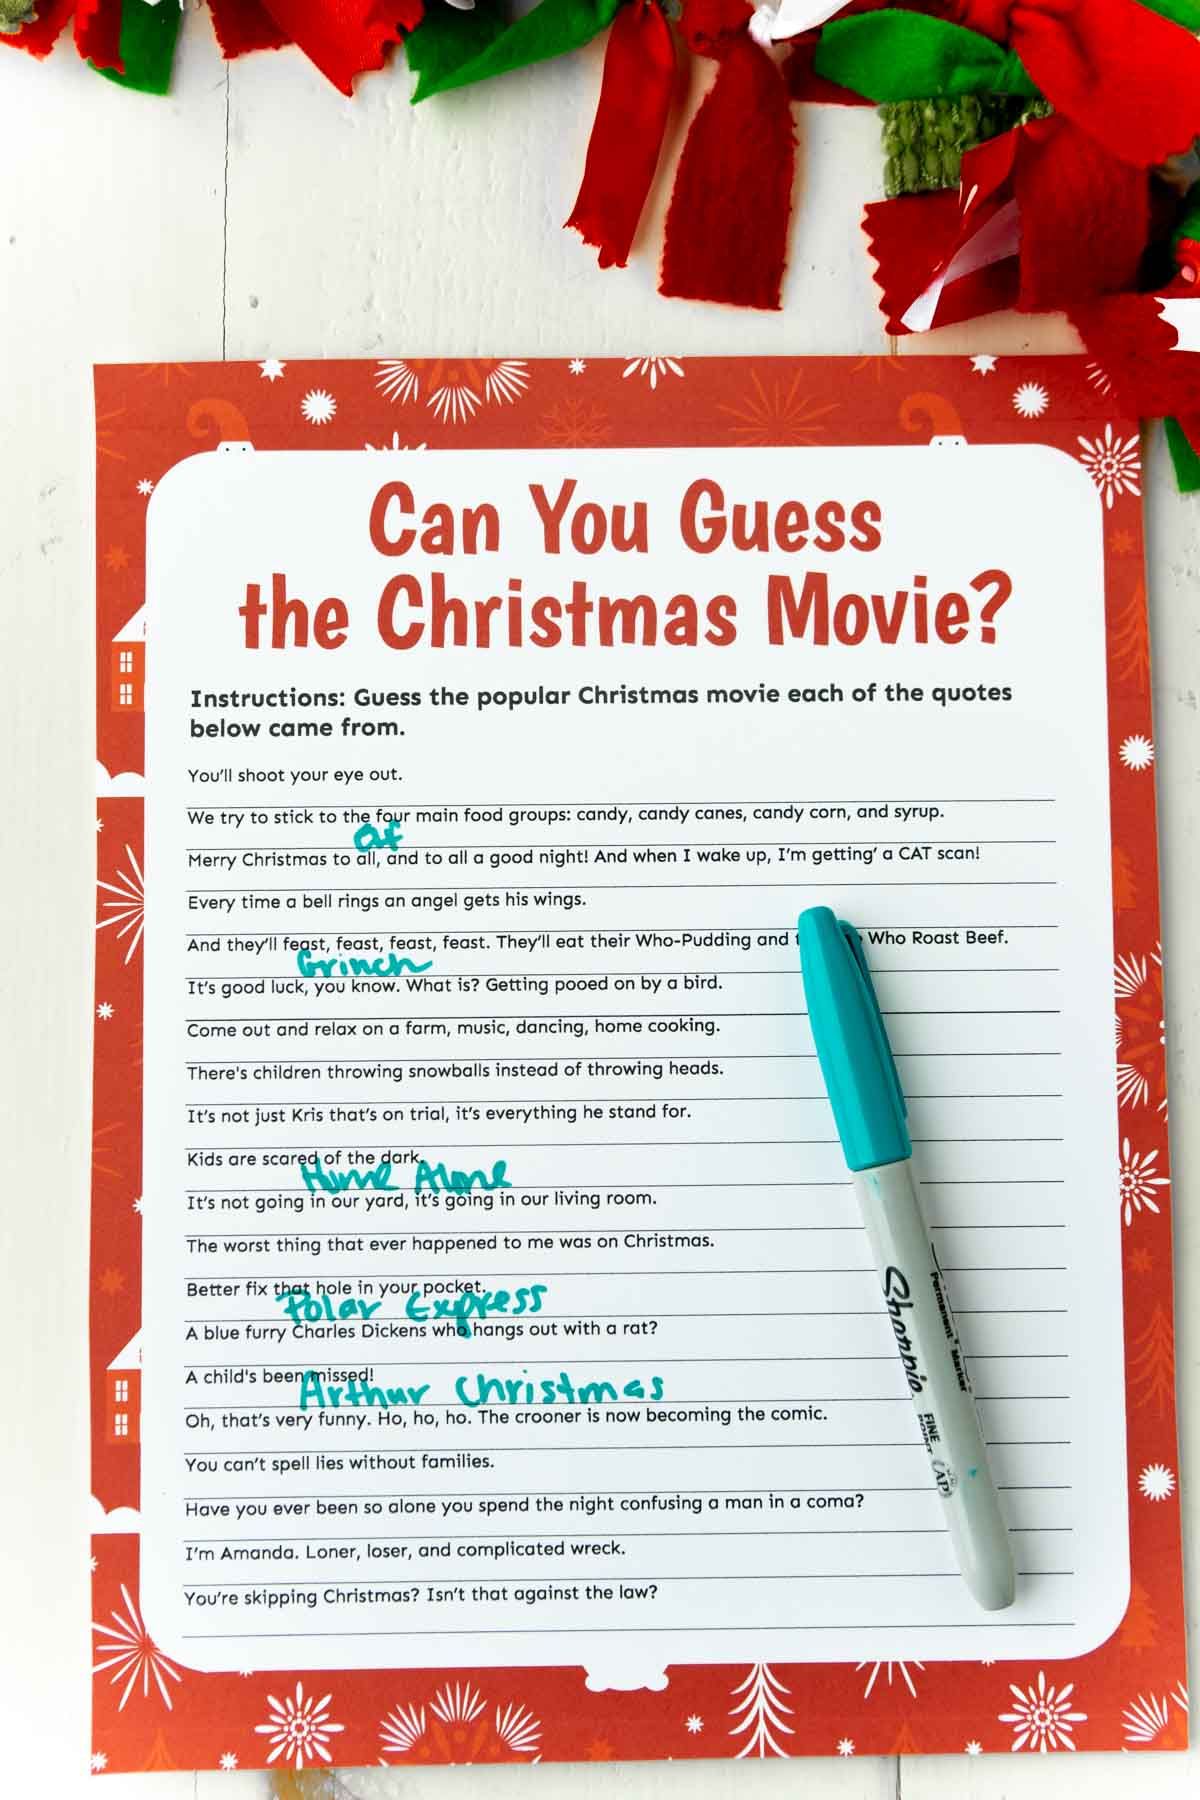 Ένα χριστουγεννιάτικο παιχνίδι trivia με πράσινο στυλό στην κορυφή